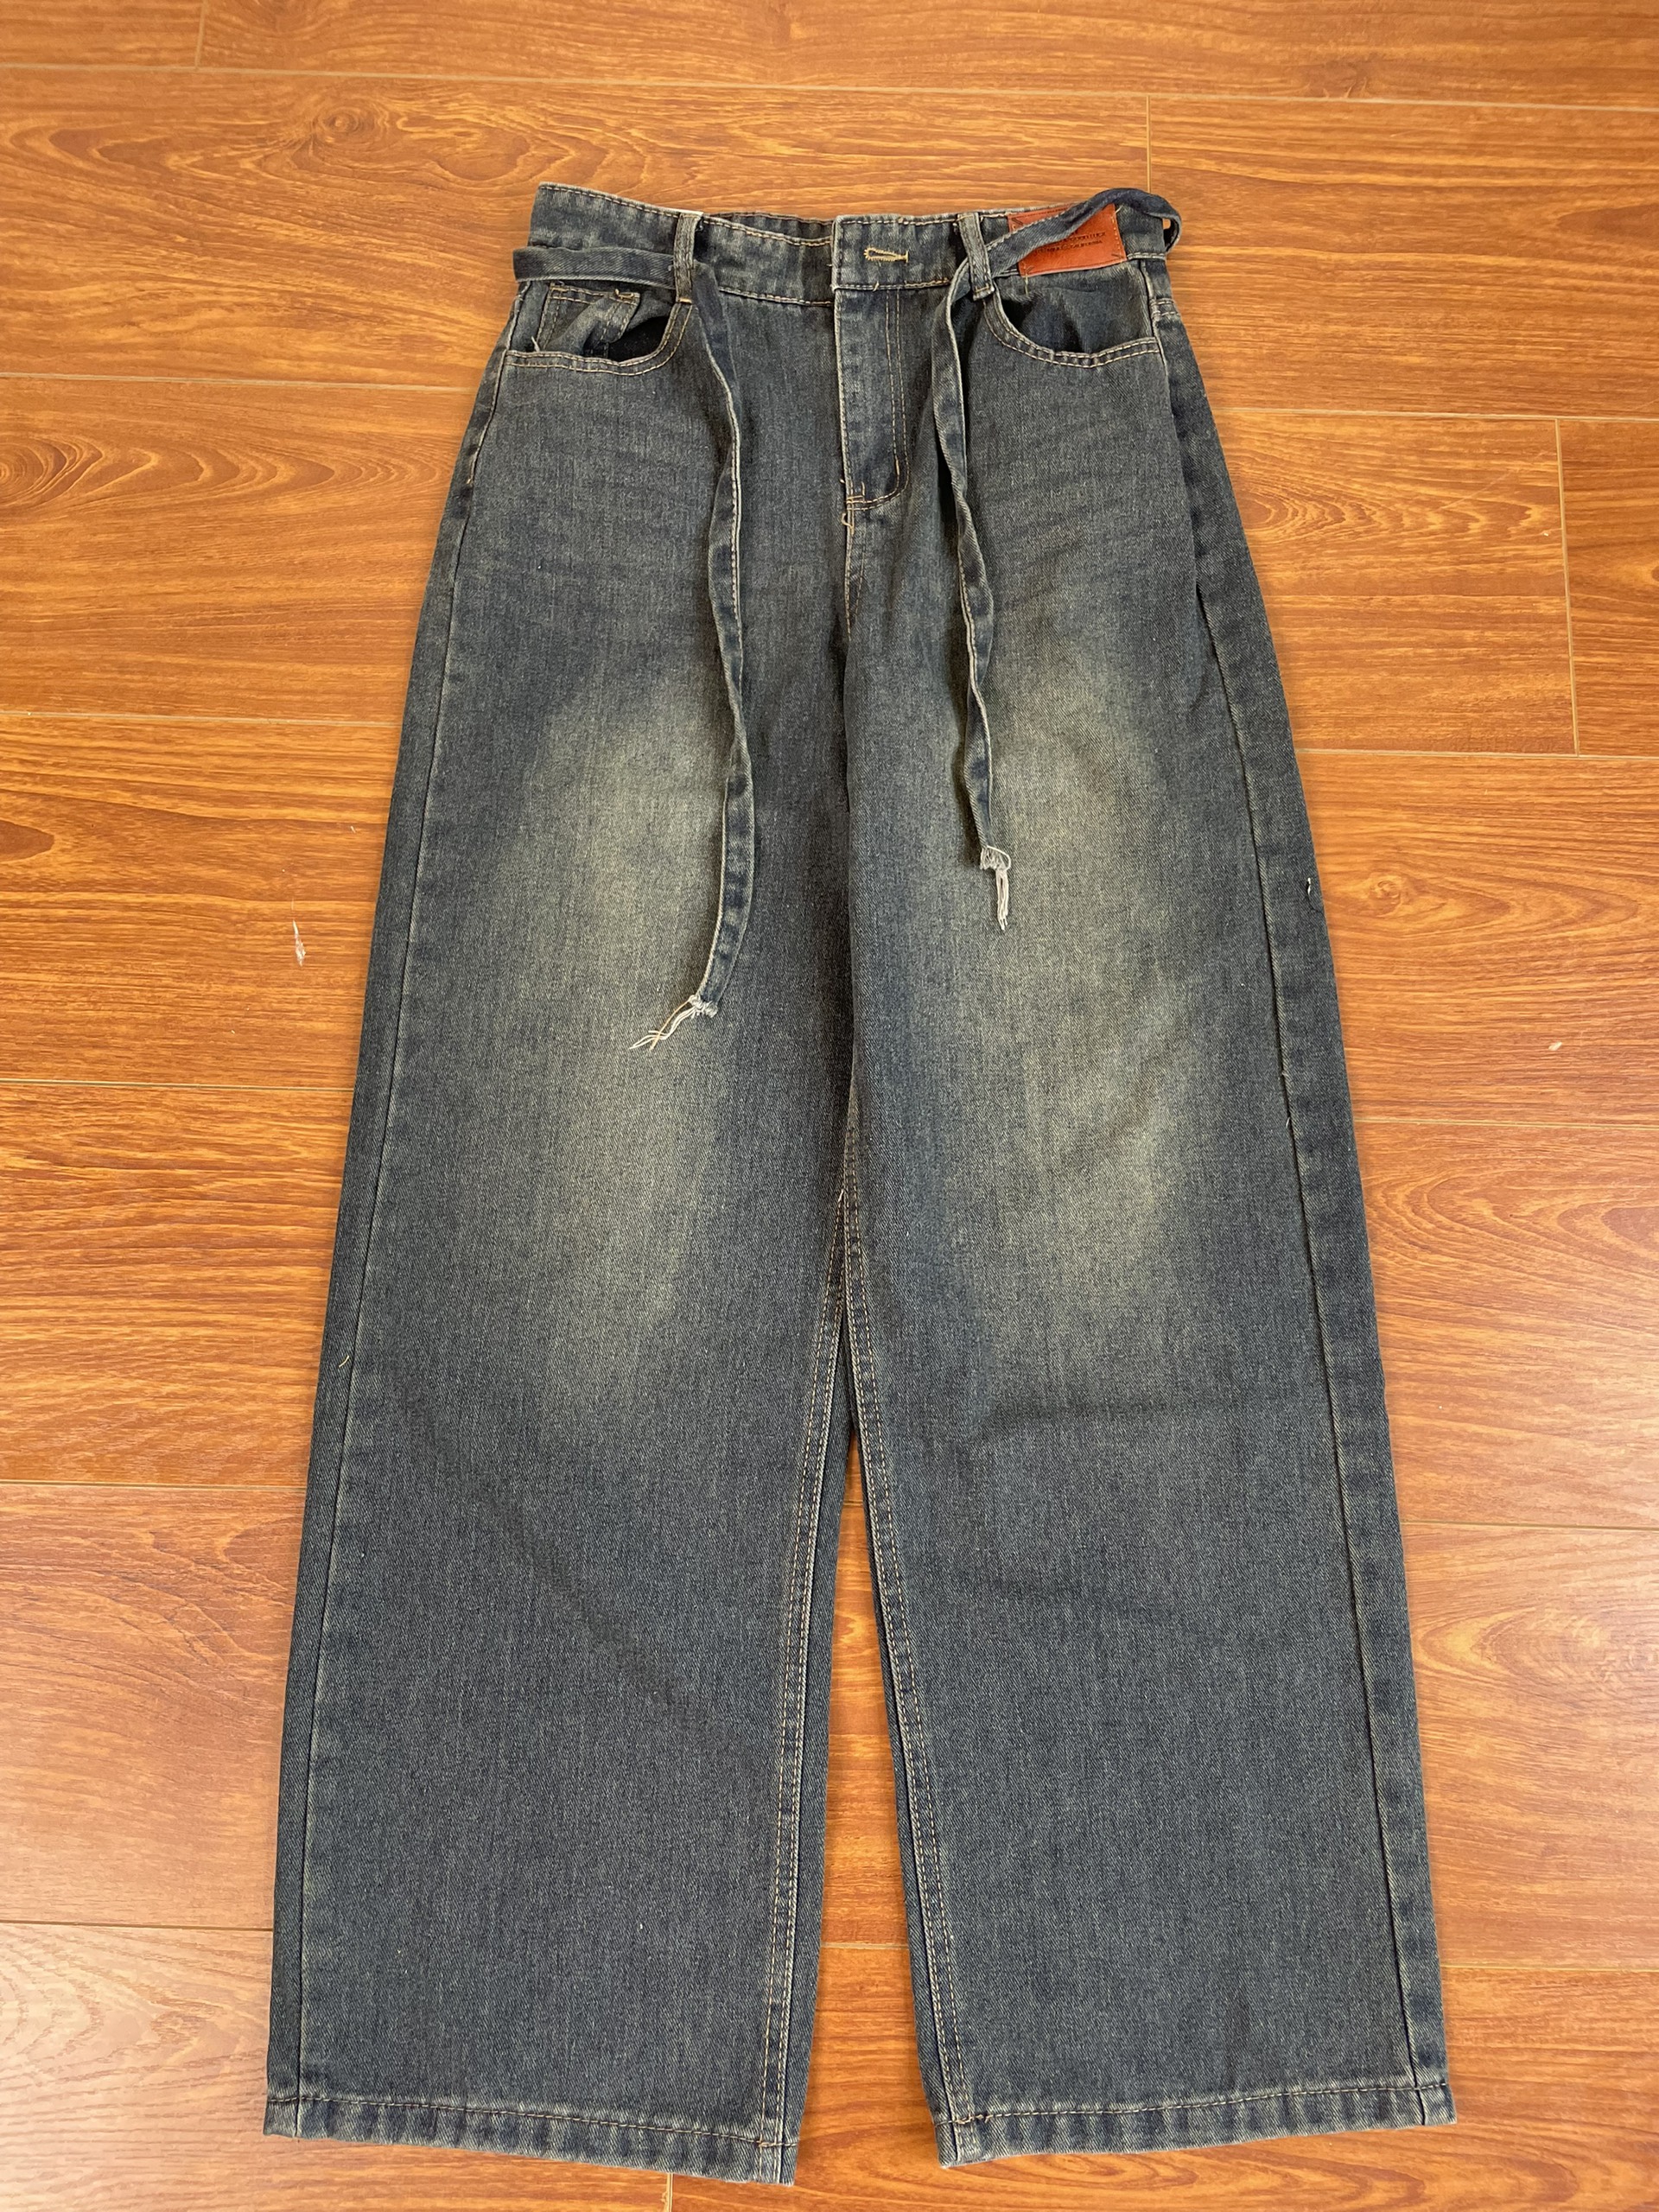 Quần jeans ống suông rộng Quan9062 